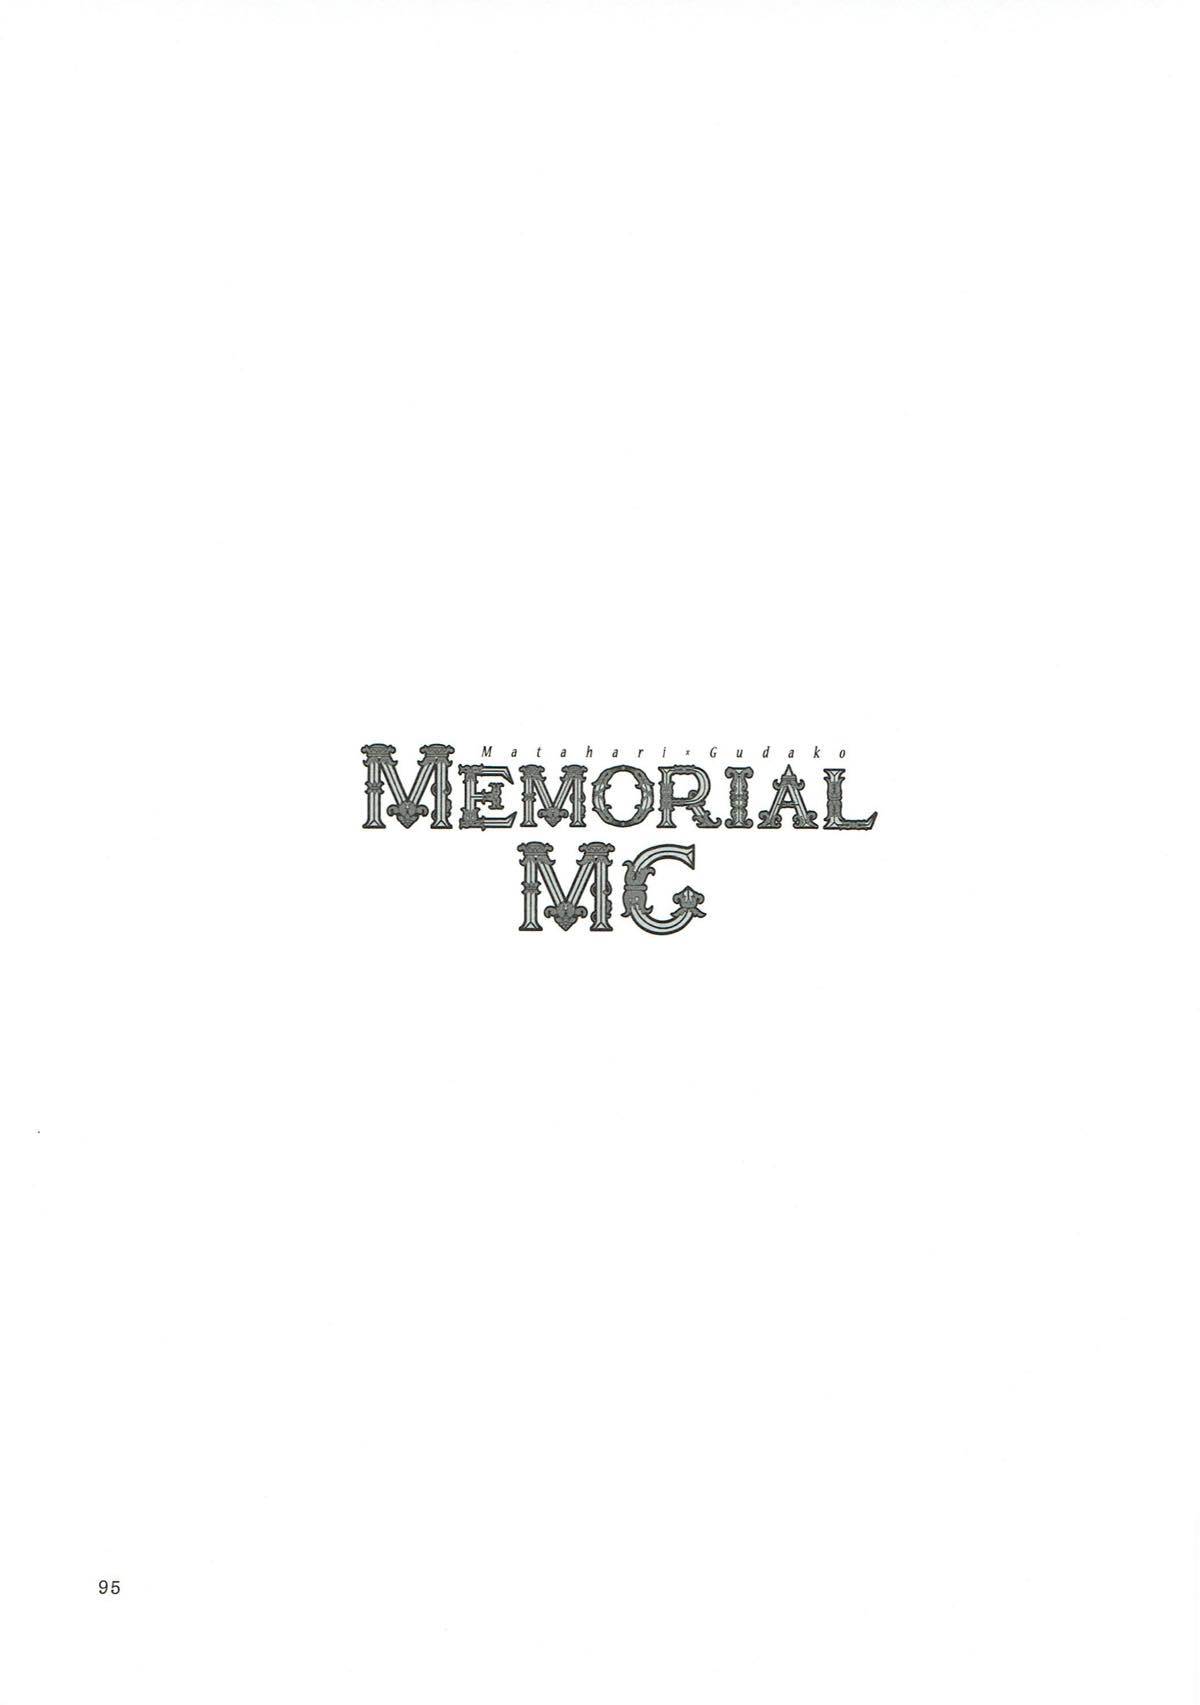 MEMORIAL MG